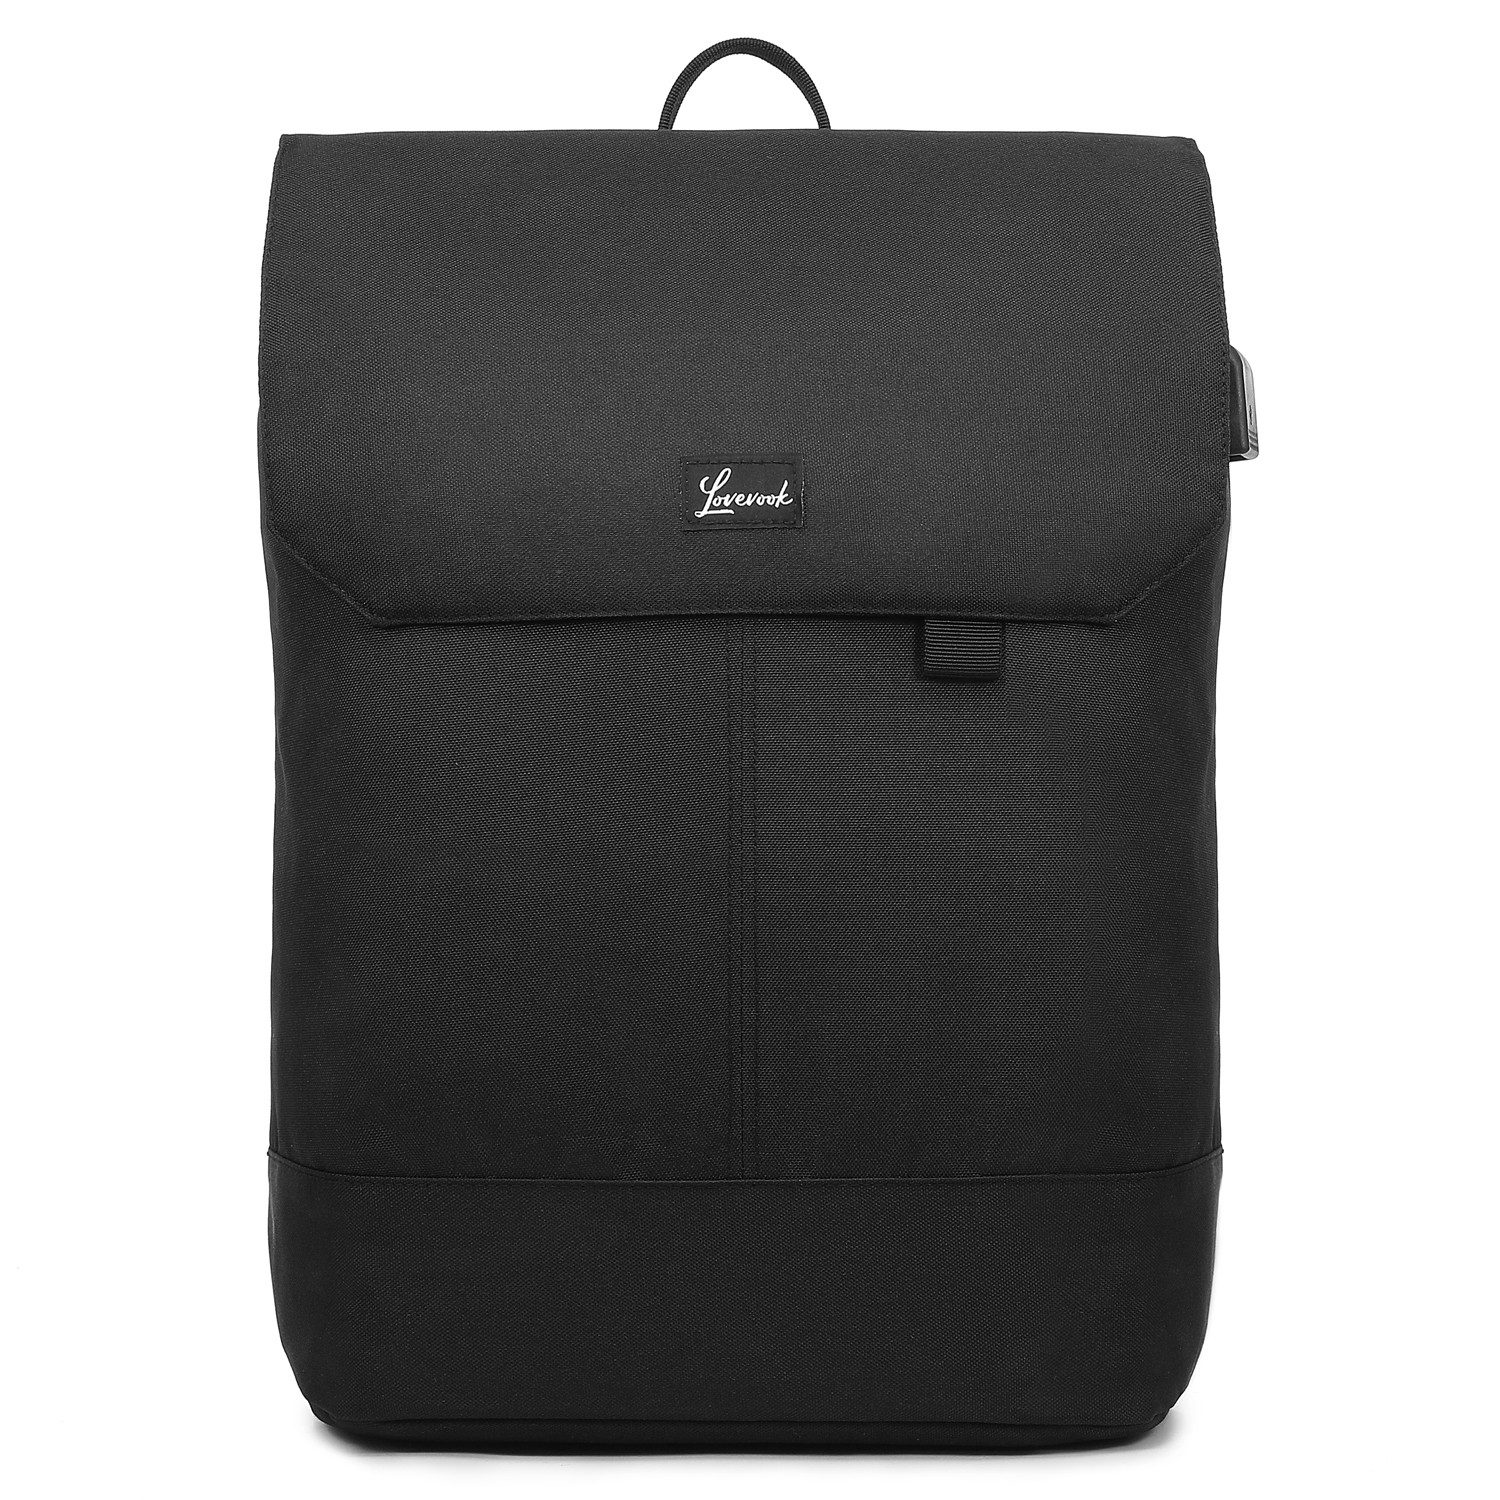 LOVEVOOK Rucksack Elegant Daypack Wasserdichter Tagesrucksack mit Laptopfach 15,6 Zoll, Anti Diebstahl Tasche für Ausflüge, Uni, Schule u. Büro